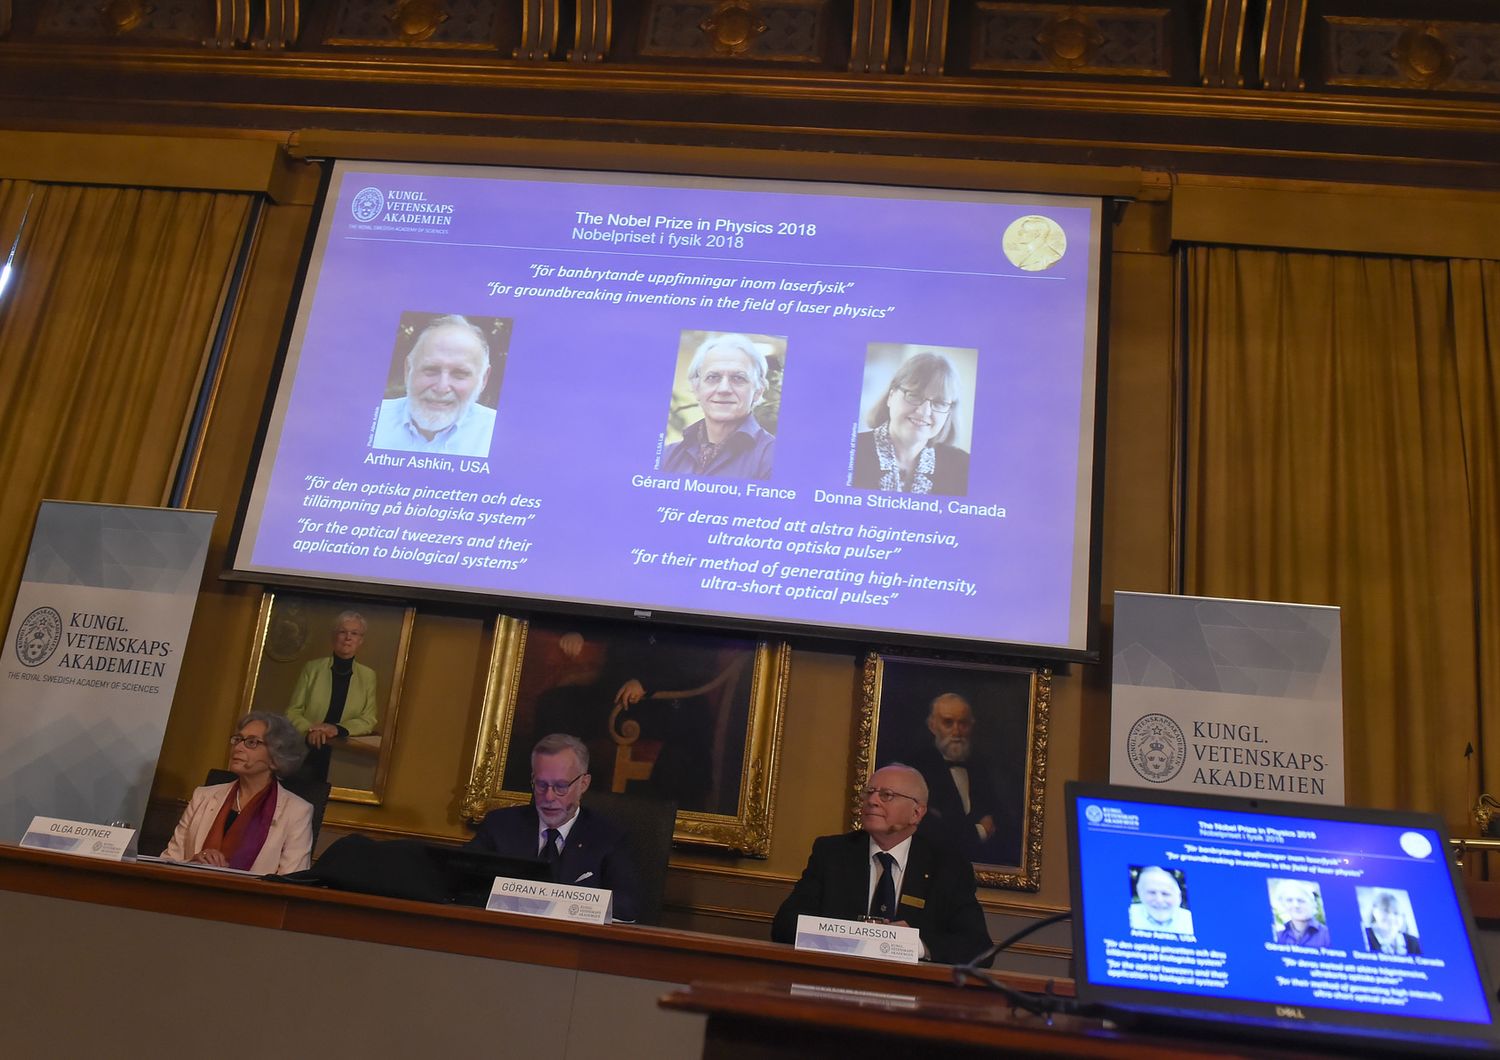 La reale accademia di Stoccolma assegna il Premio nobel per la Fisica 2018